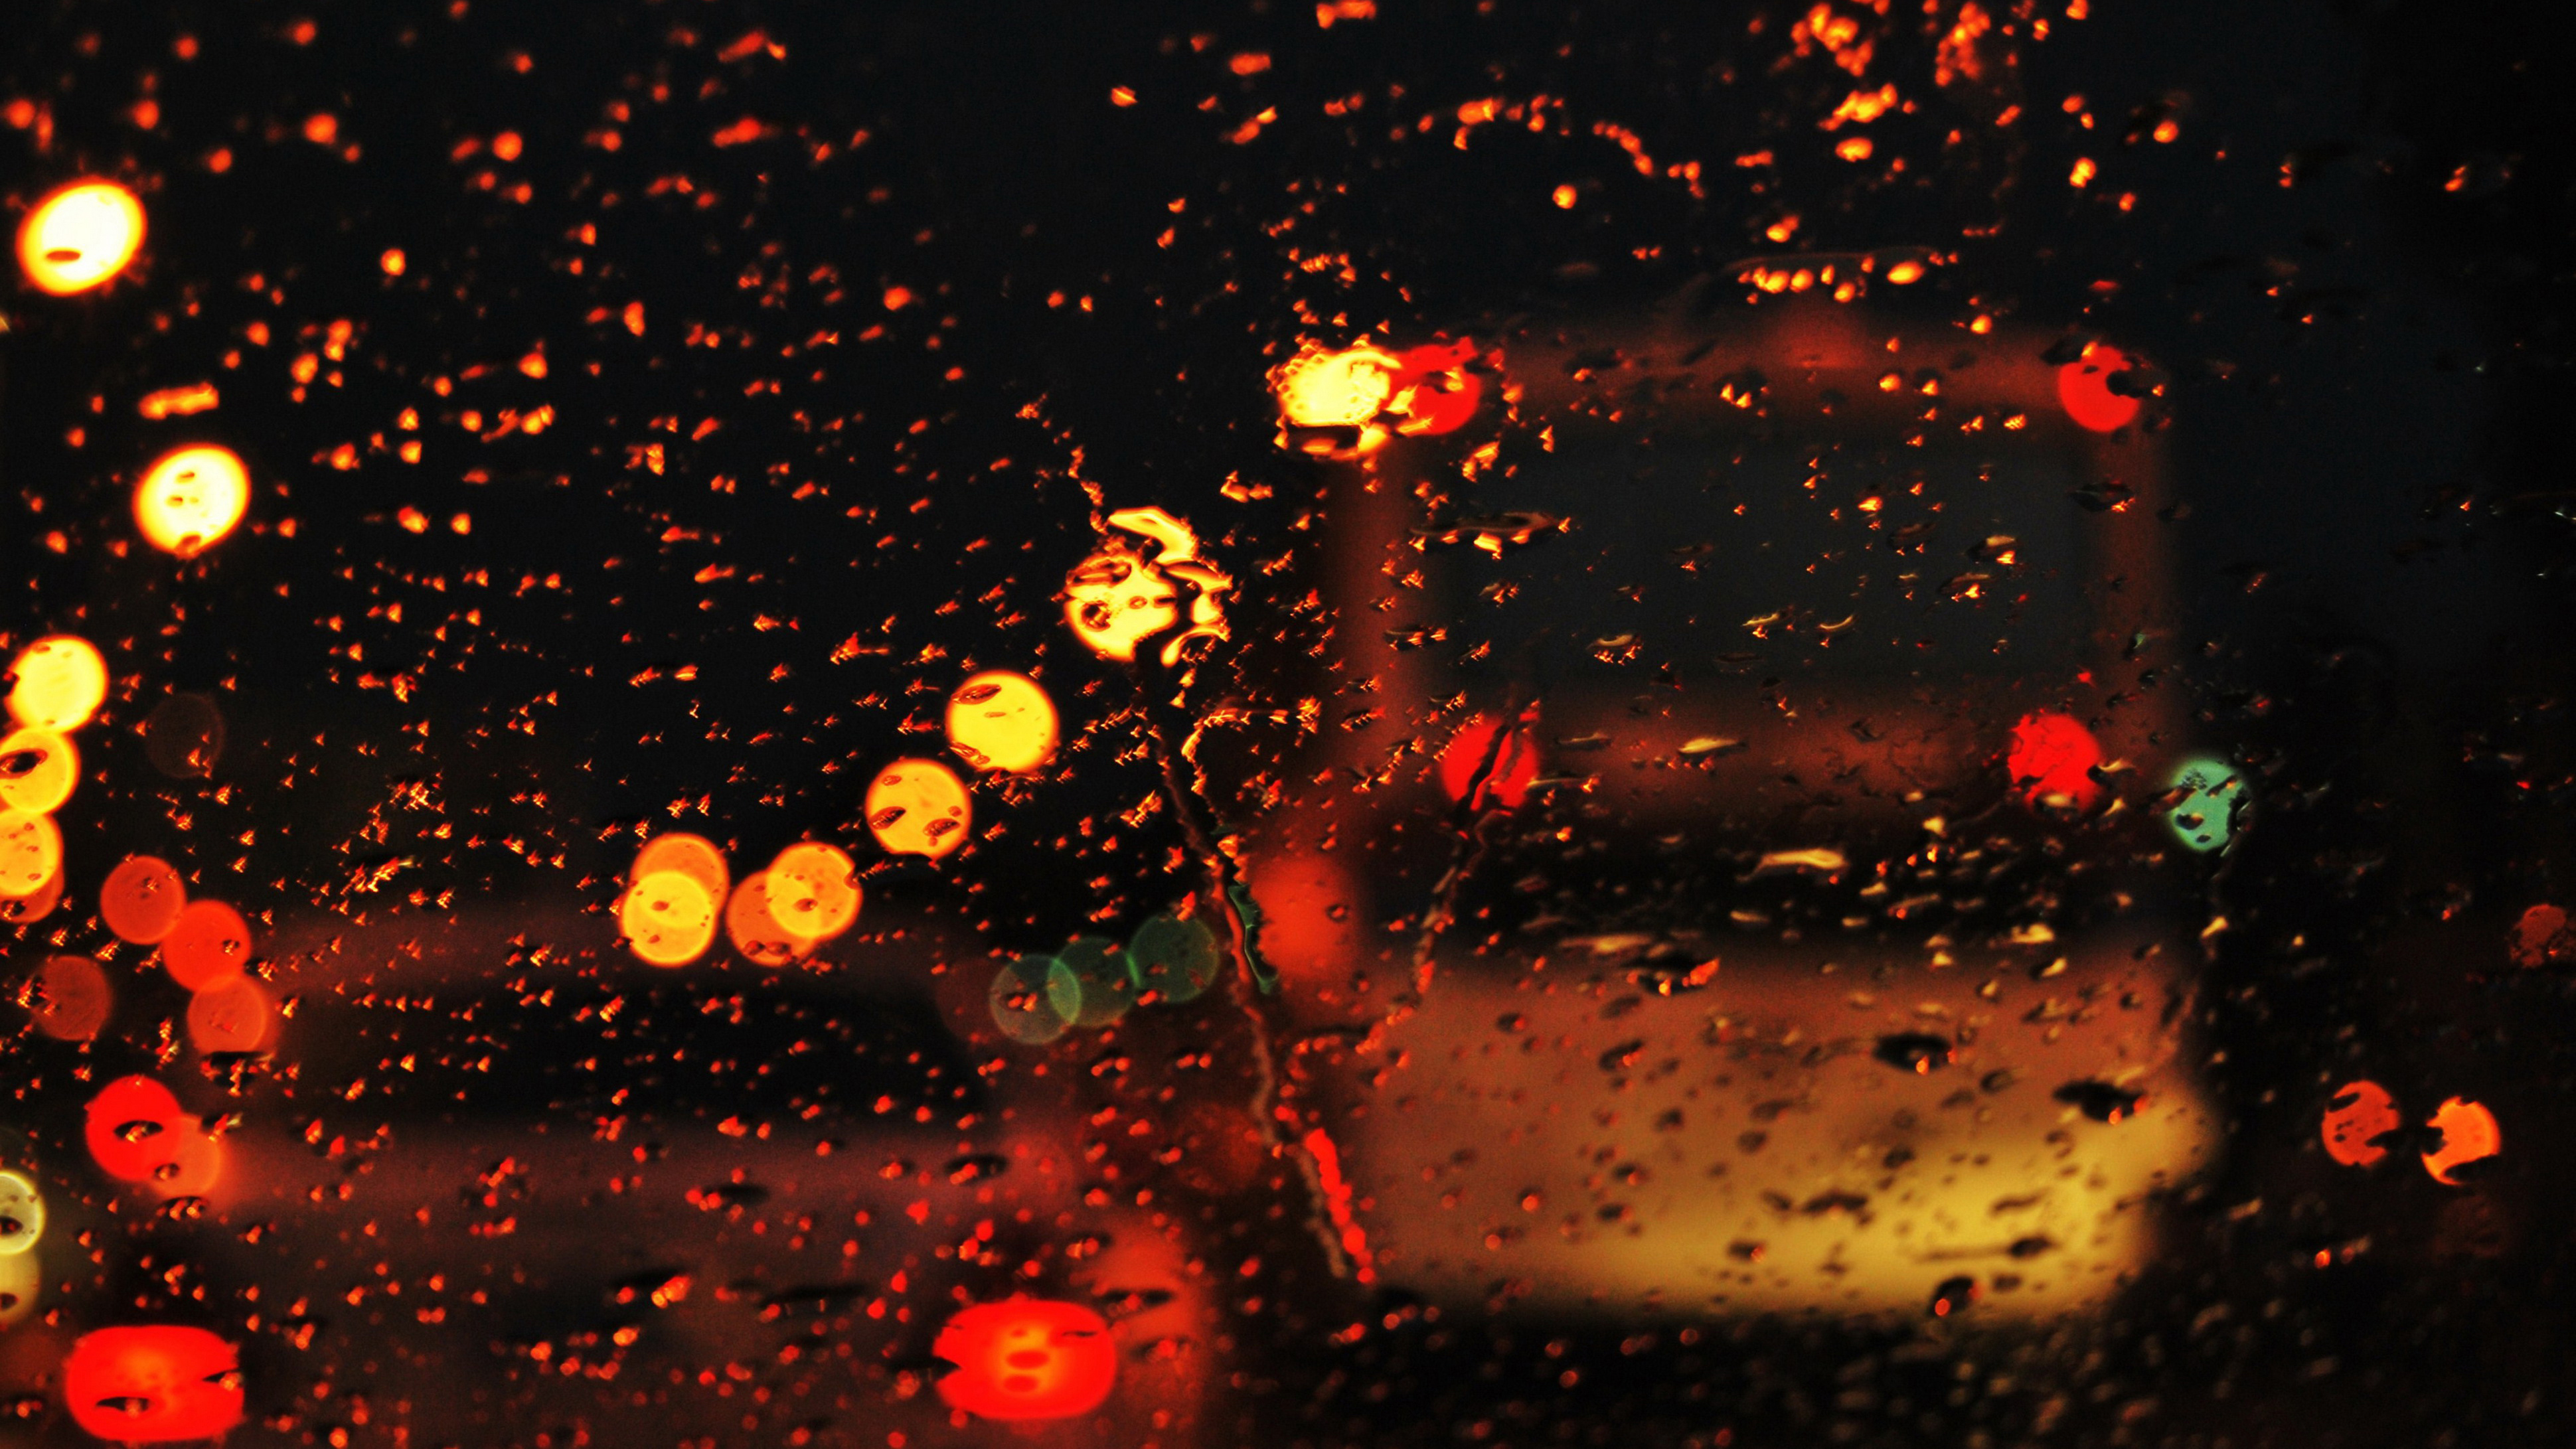 Вечер 2 капли. Дождь ночью. "Дождливый вечер". Дождливая ночь. Дождь в городе.